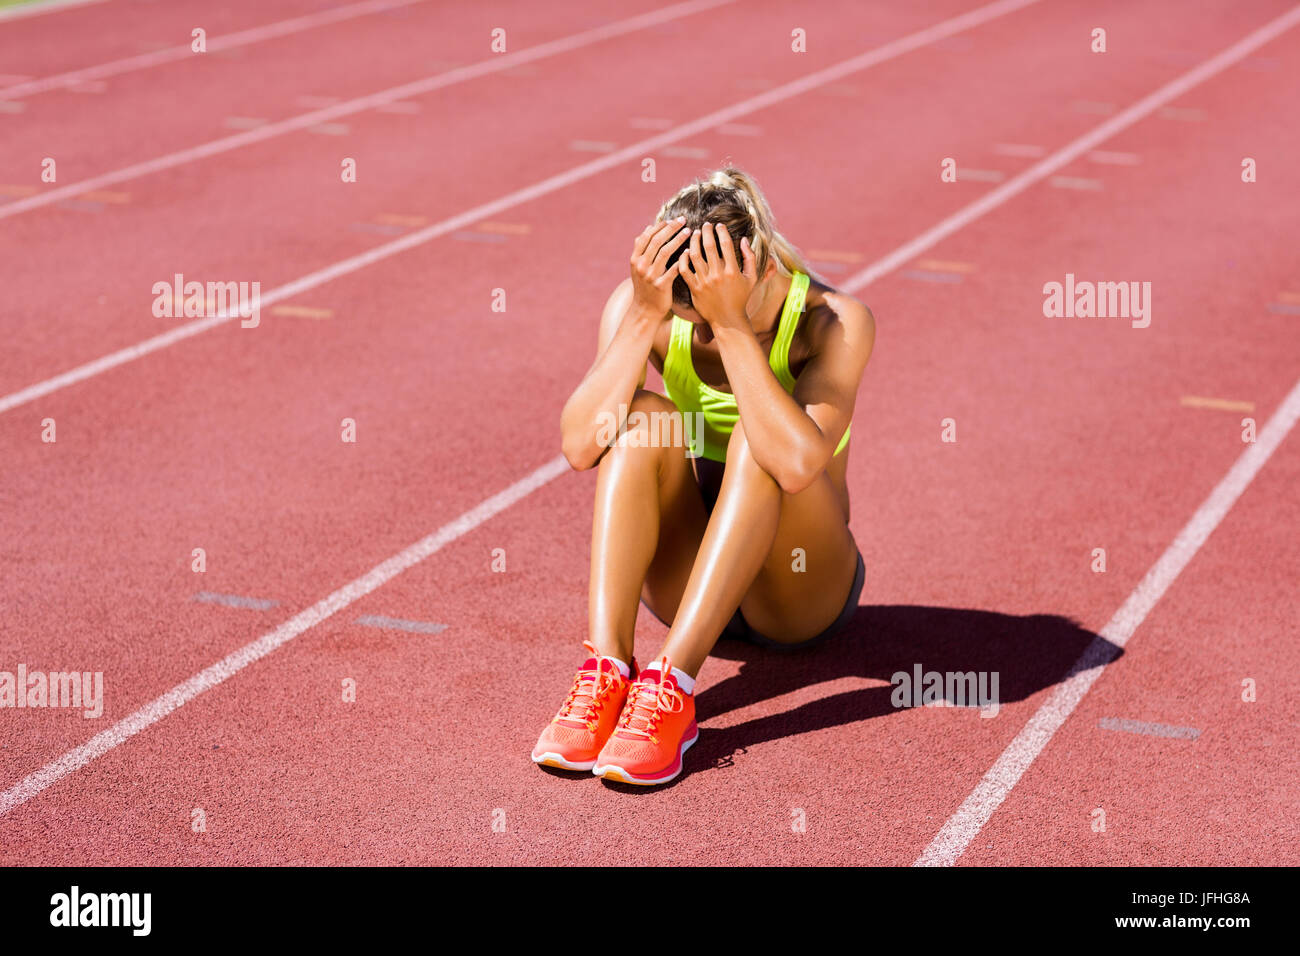 Upset female athlete sitting on running track Stock Photo